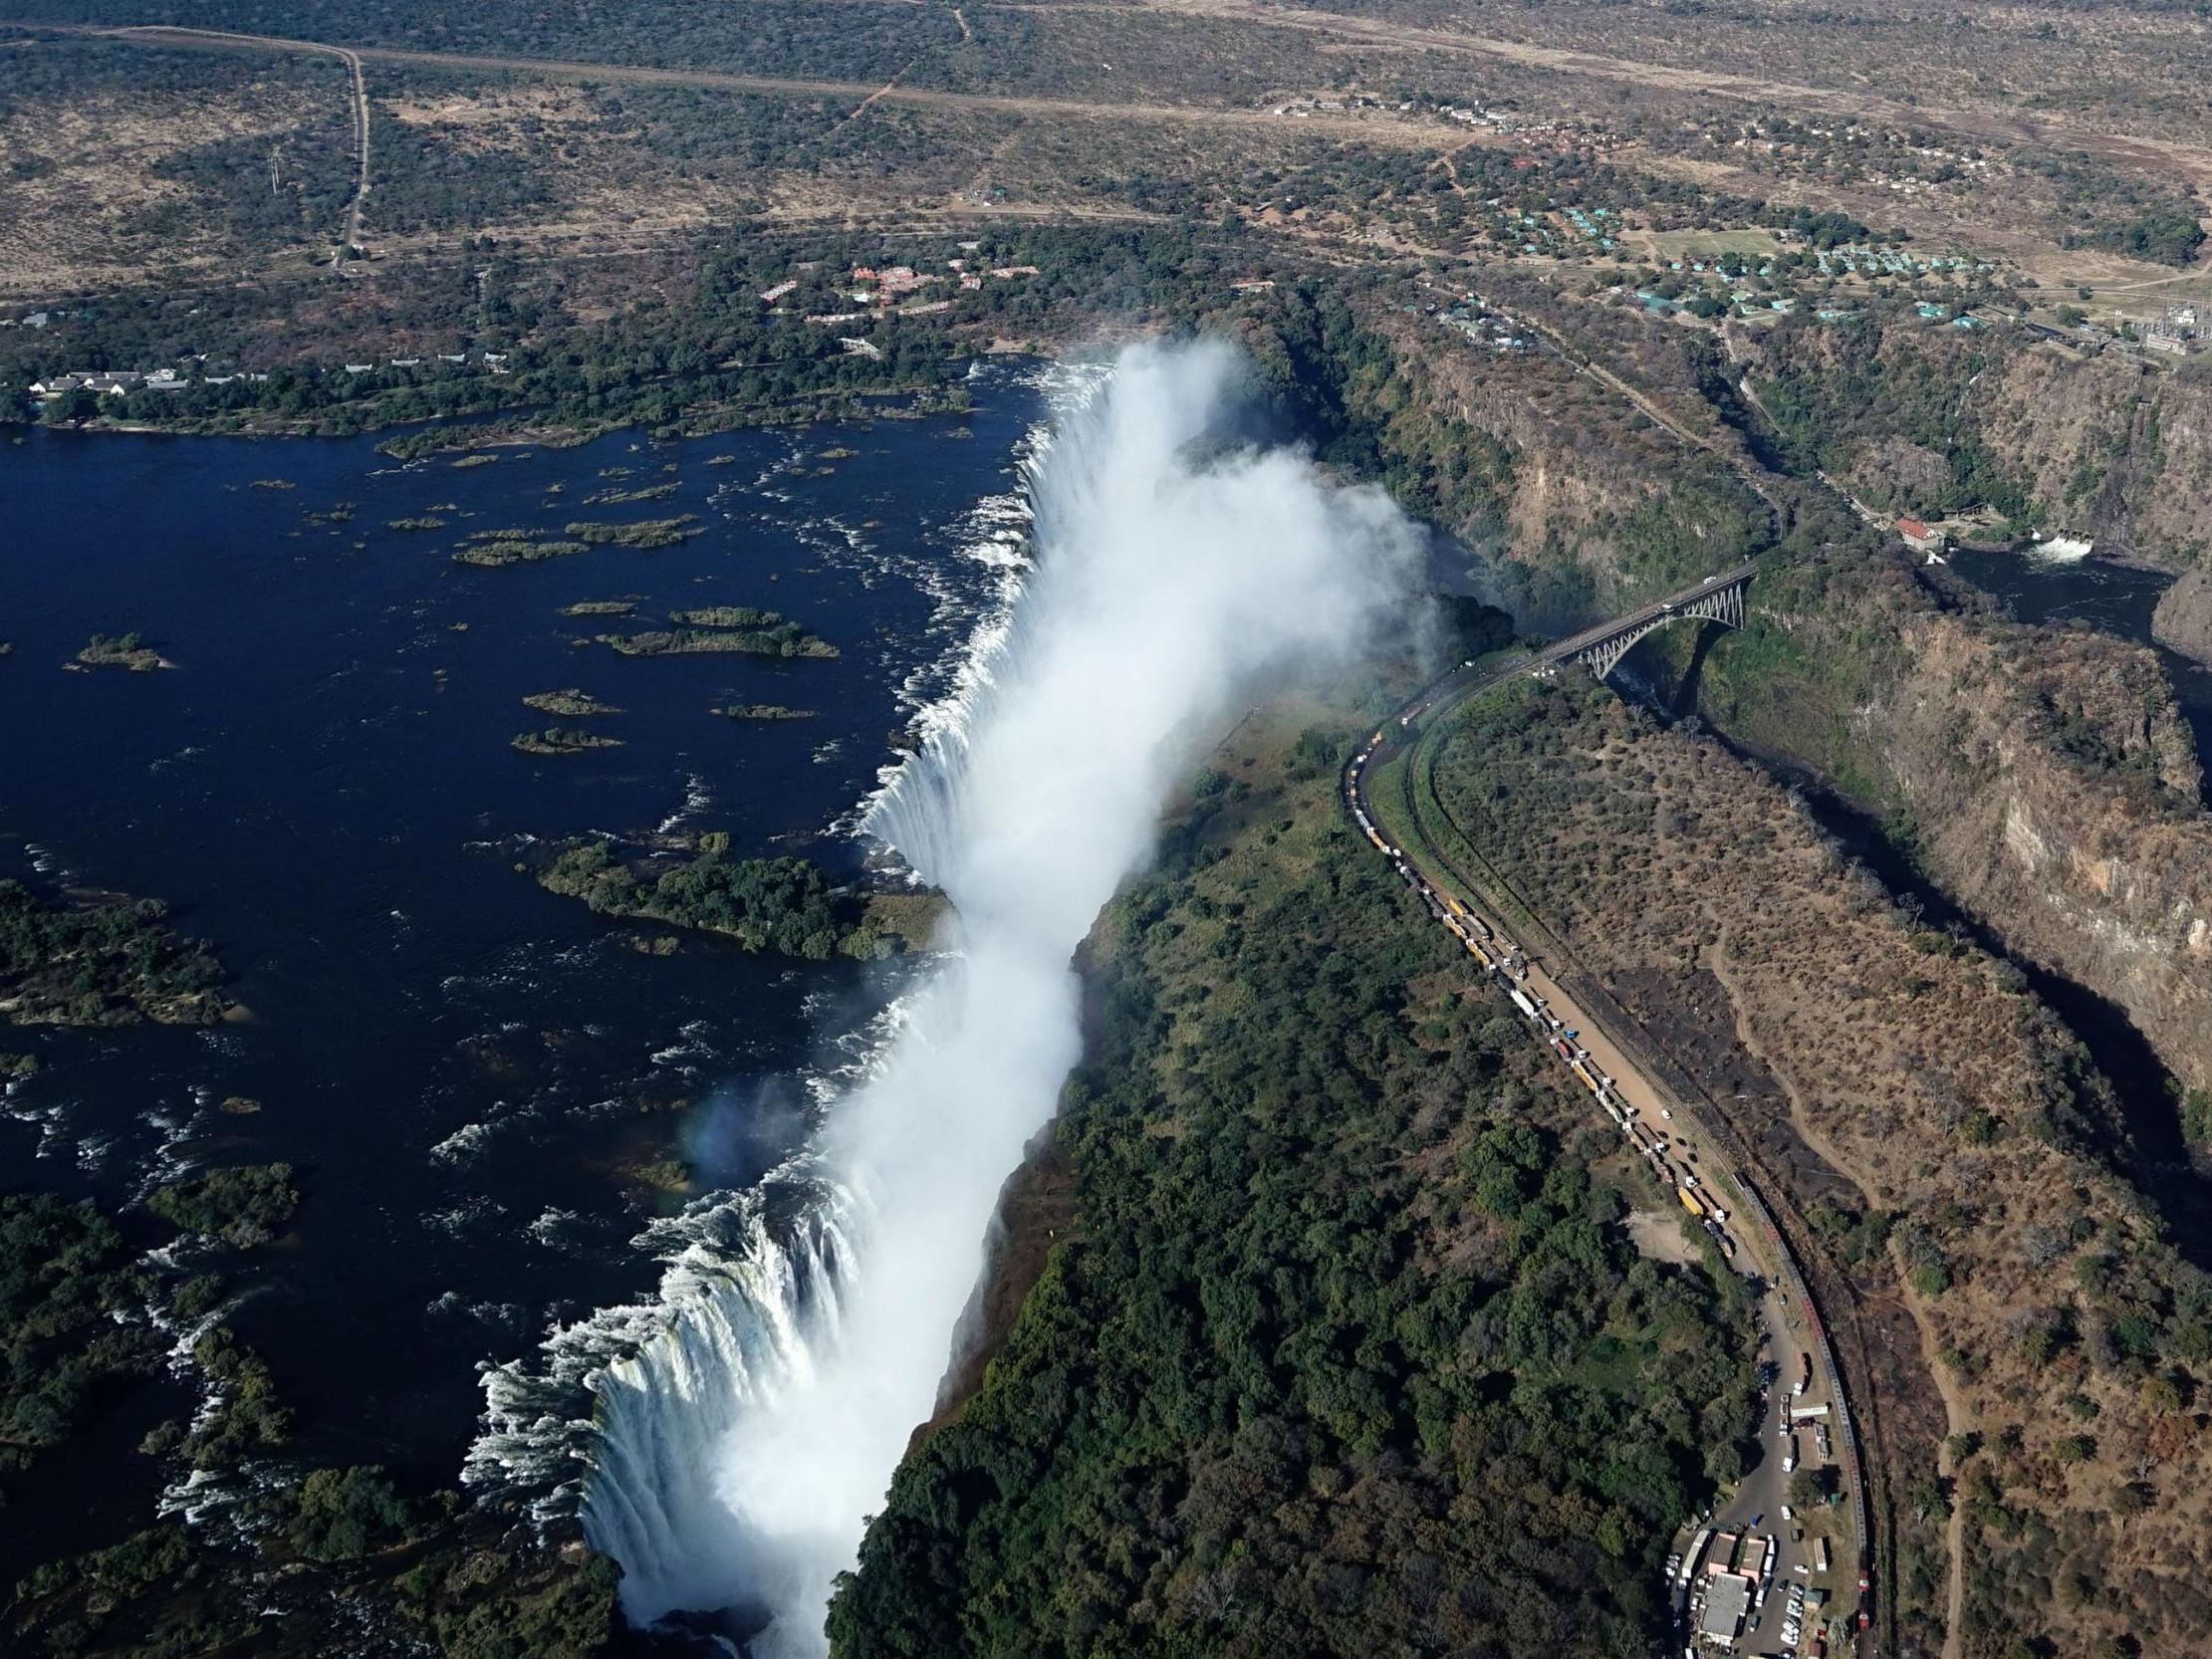 The Victoria Falls on the Zambezi river pictured in June 2018